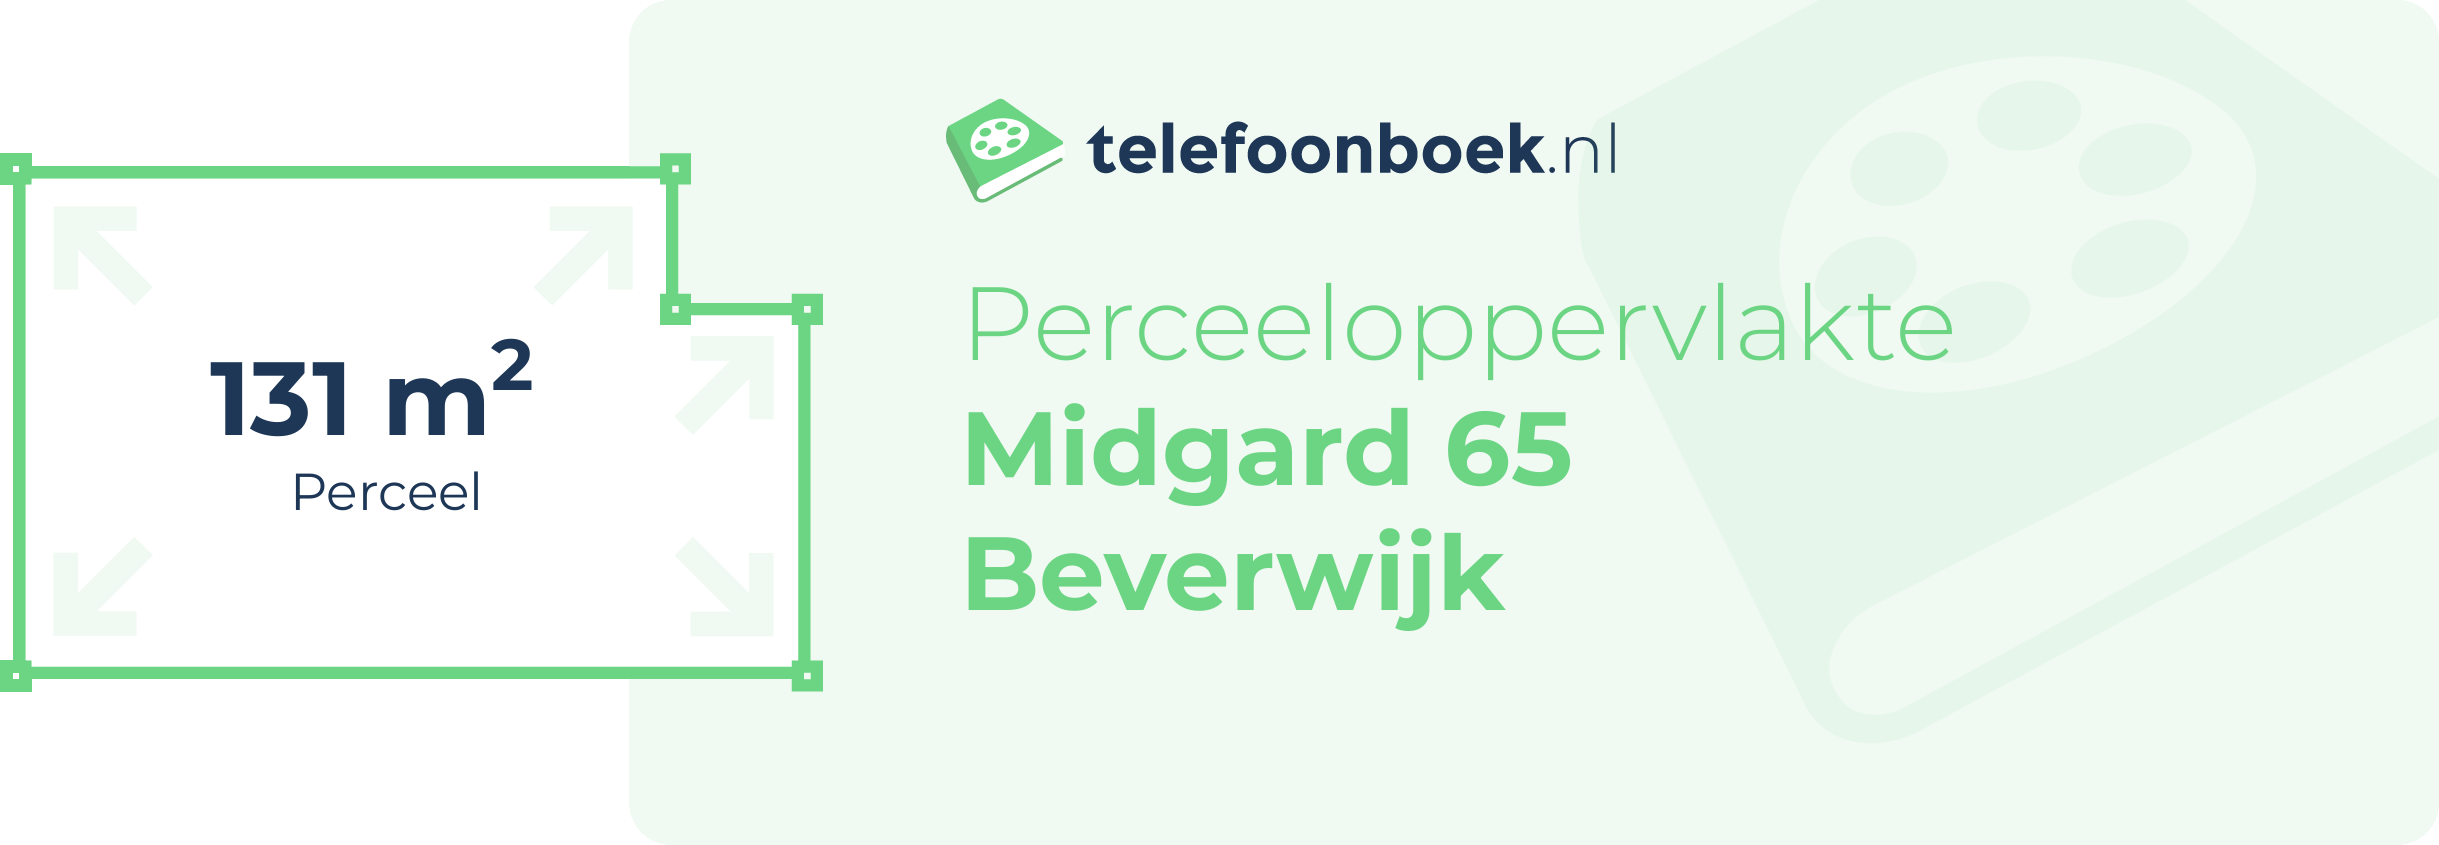 Perceeloppervlakte Midgard 65 Beverwijk